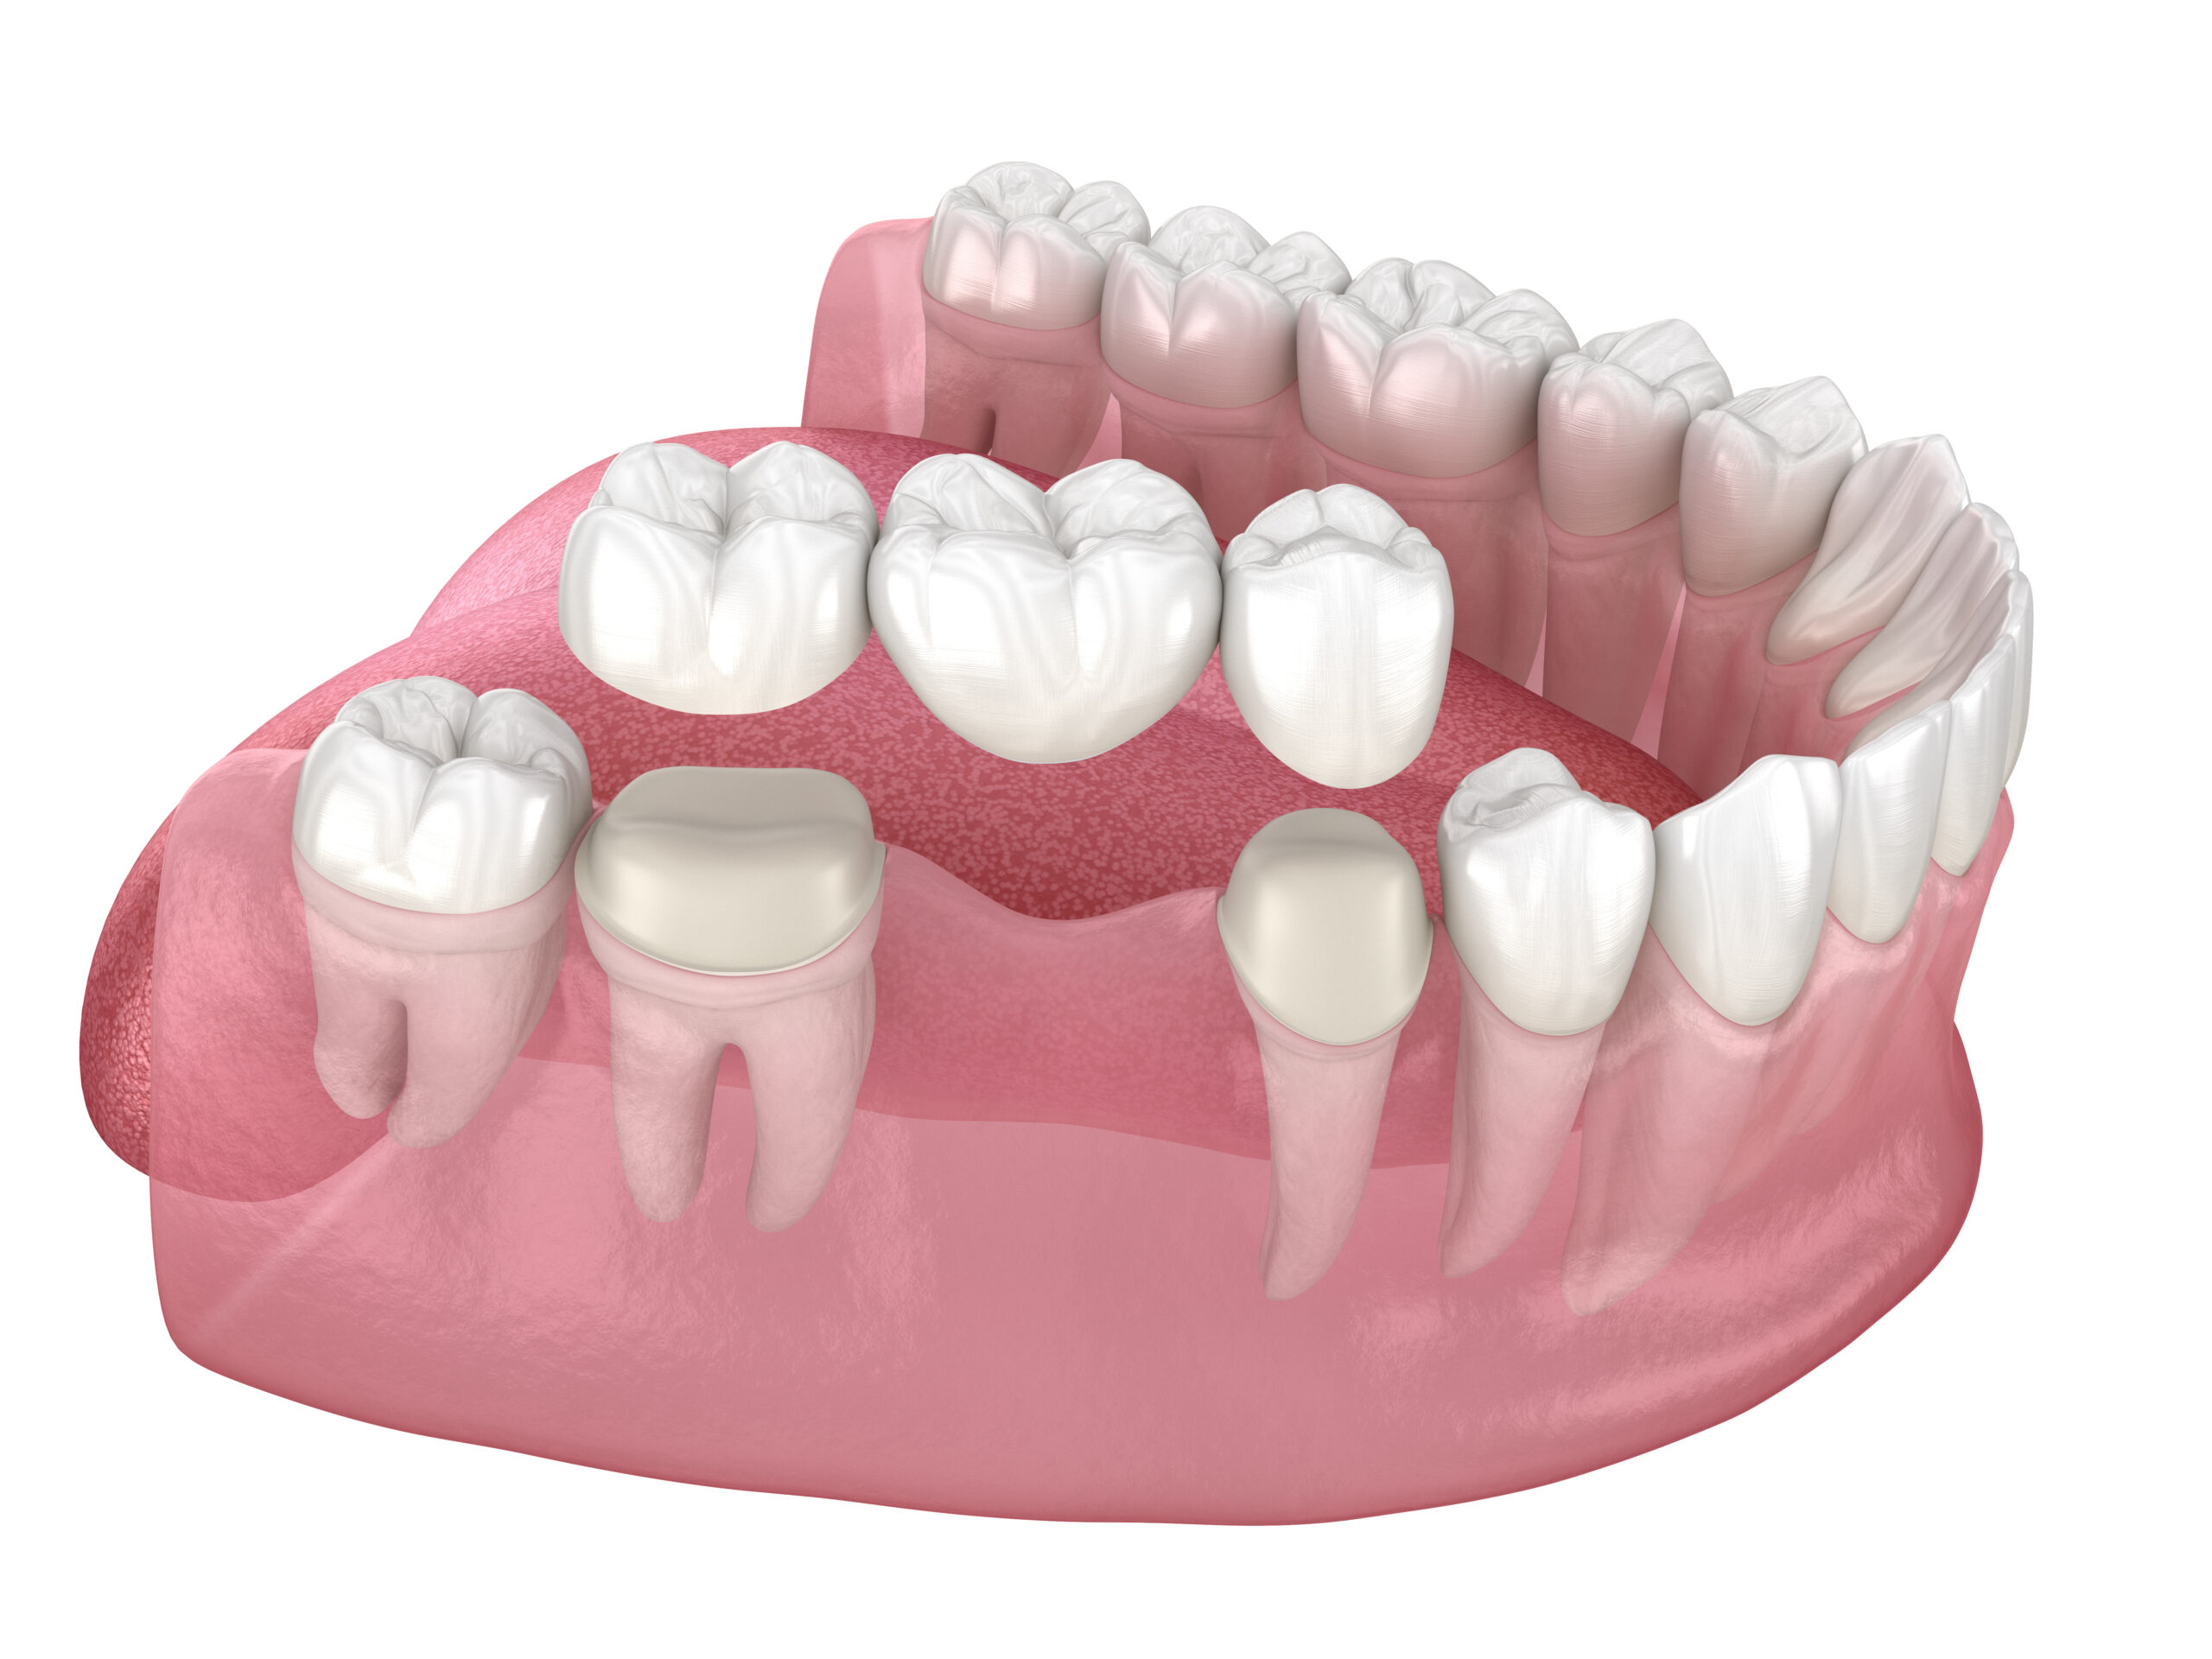 ブリッジと部分床義歯におけるむし歯の発生率とリスク